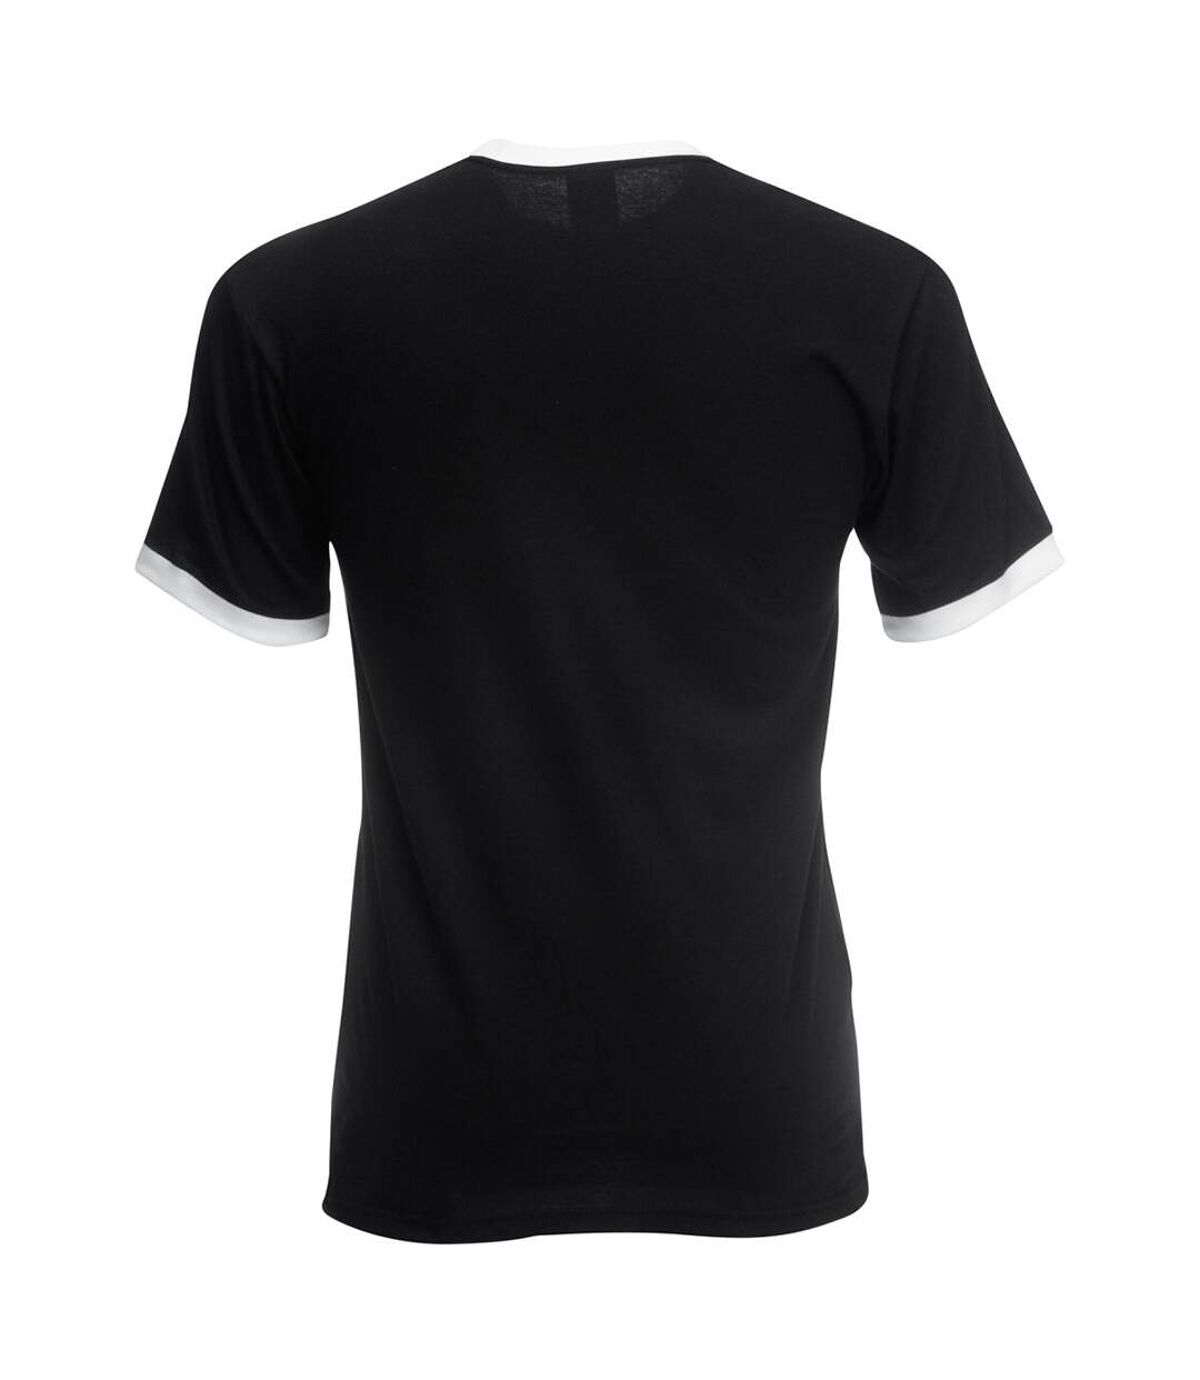 Fruit Of The Loom Mens Ringer Short Sleeve T-Shirt (Black/White)